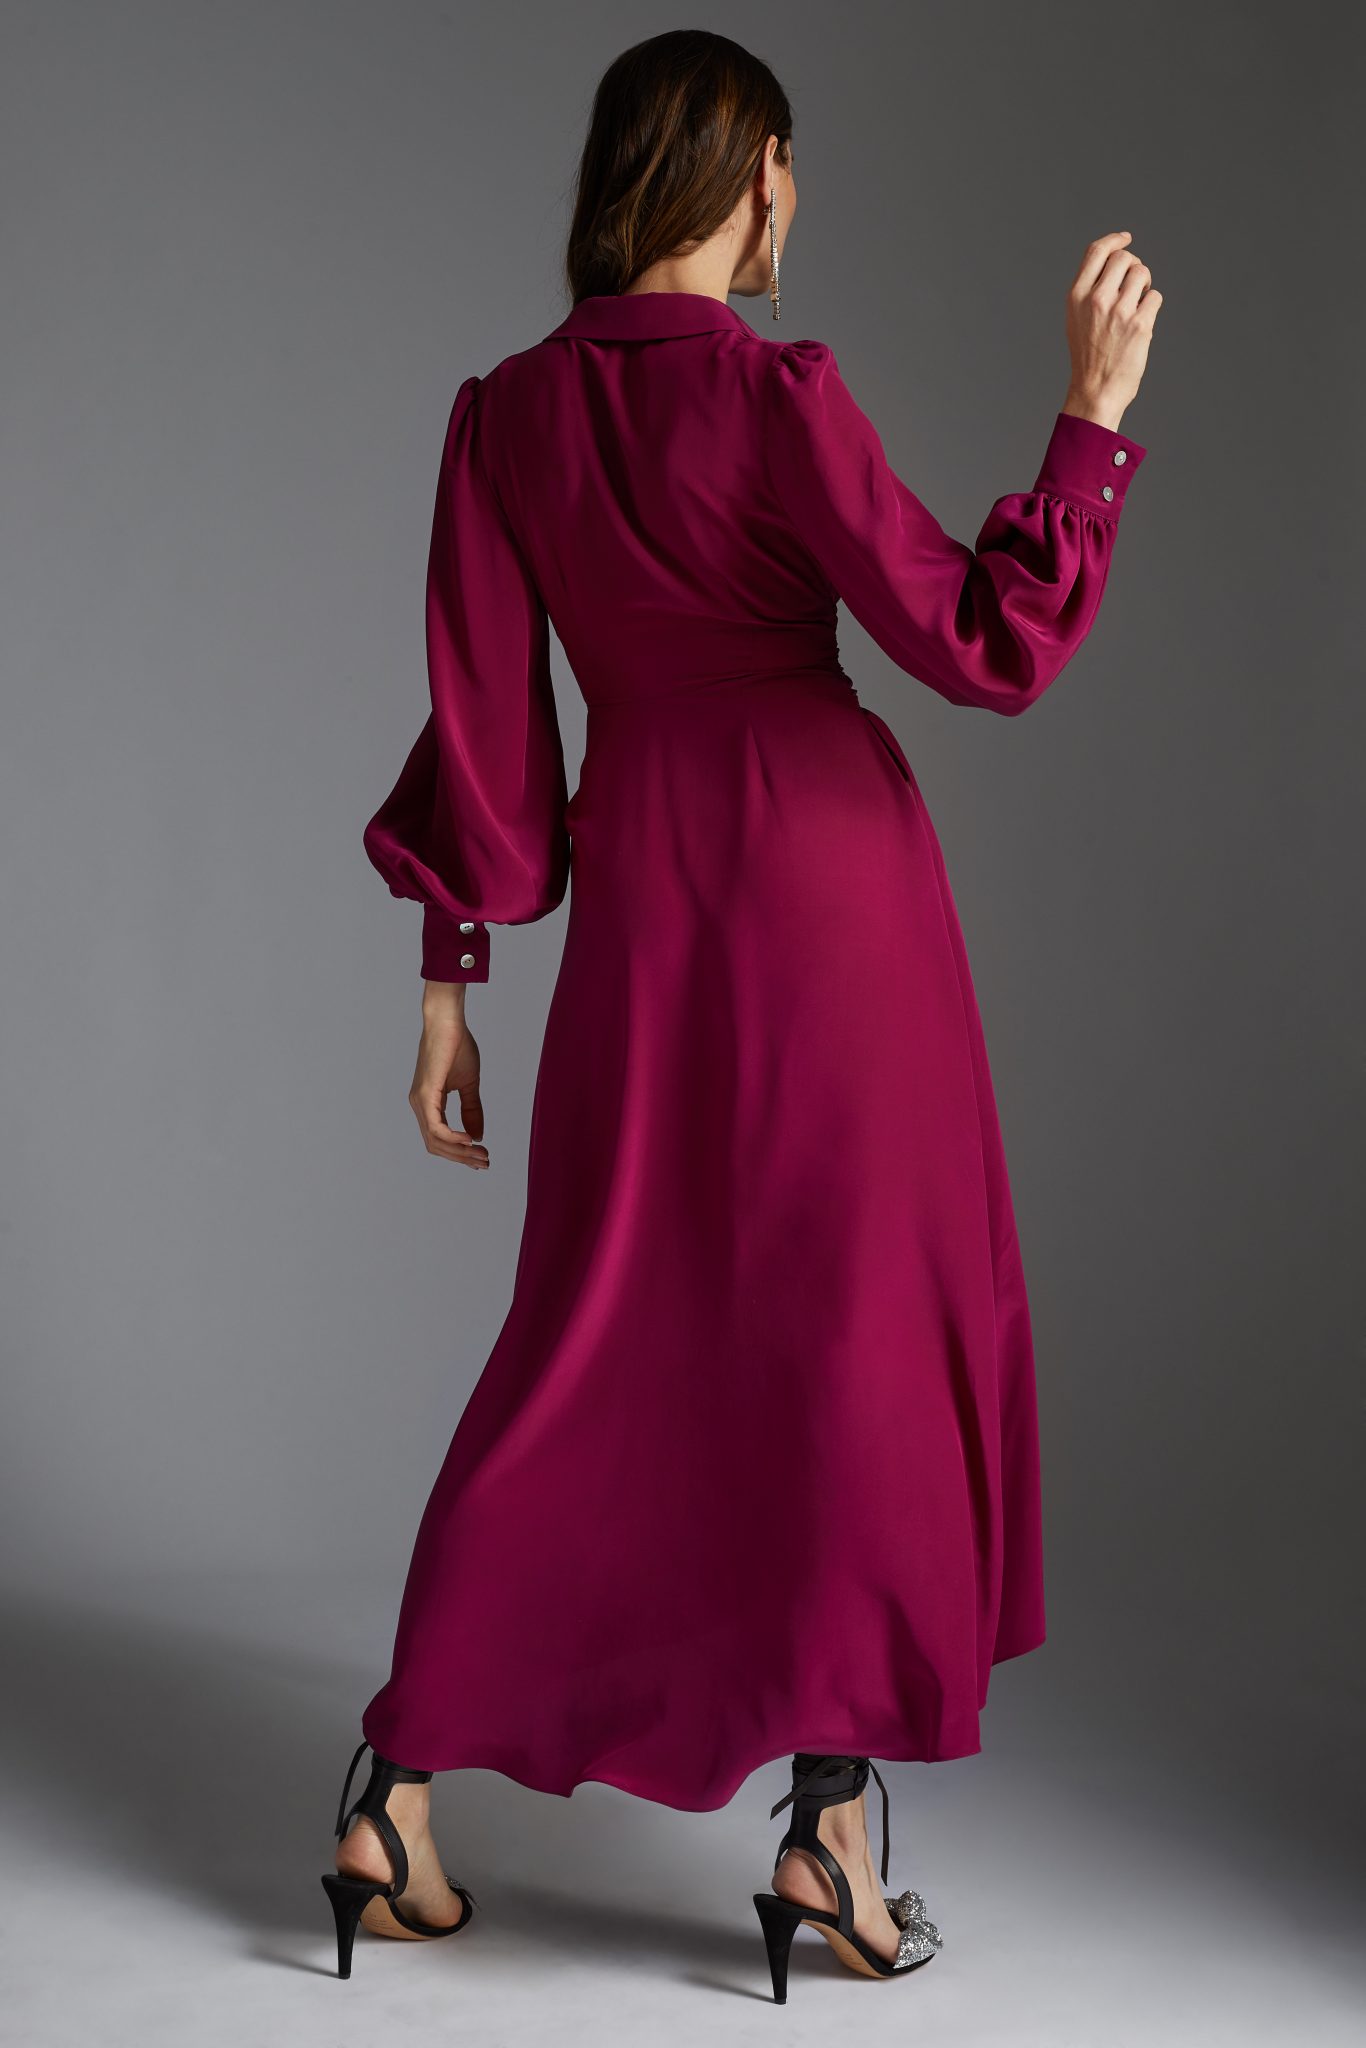 Silk Shirt Dress Midi Flash Sales, 50 ...